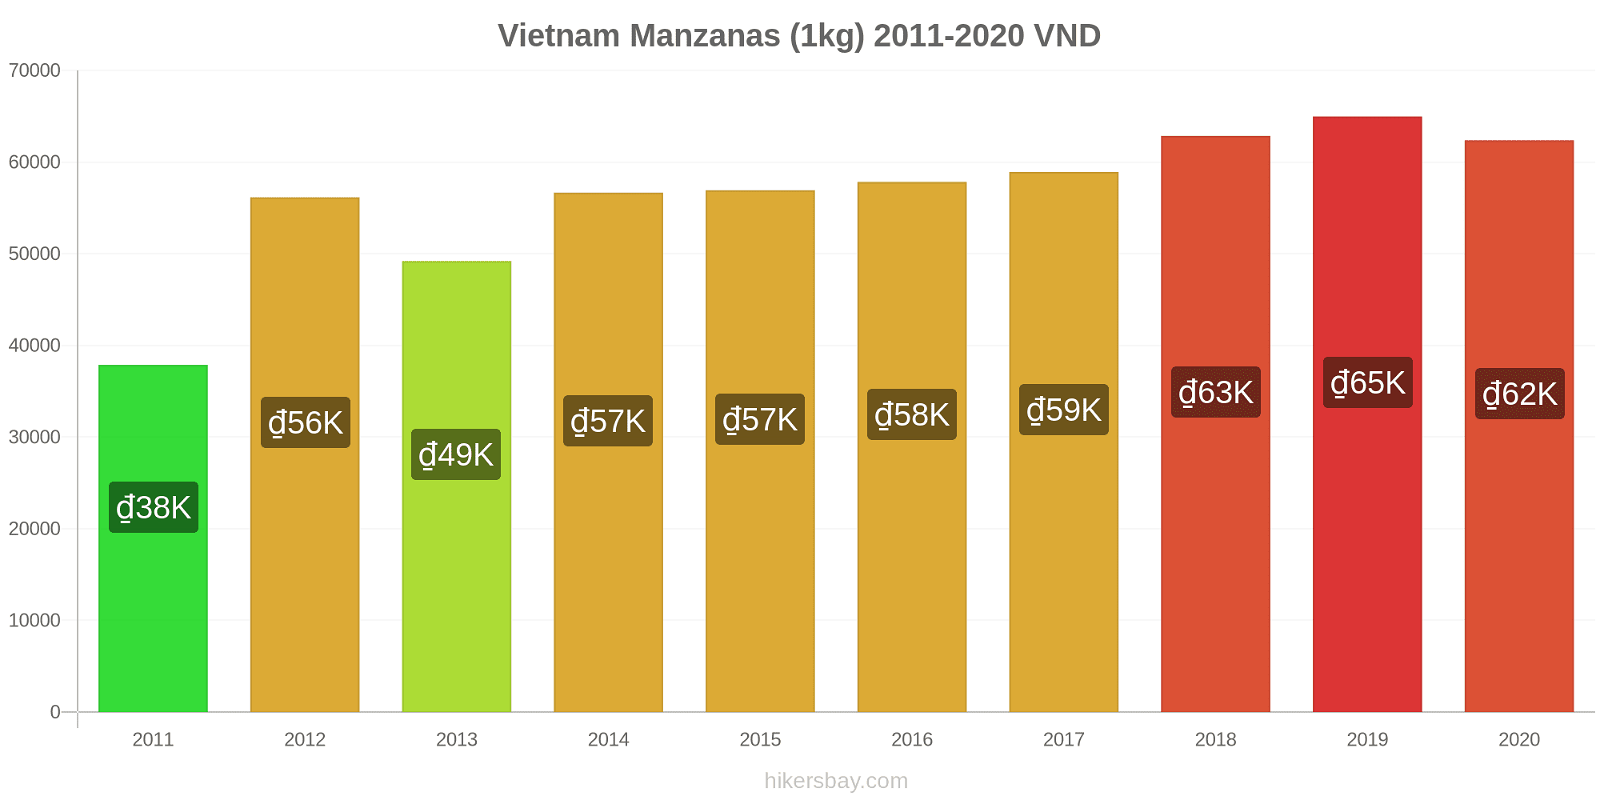 Vietnam cambios de precios Manzanas (1kg) hikersbay.com